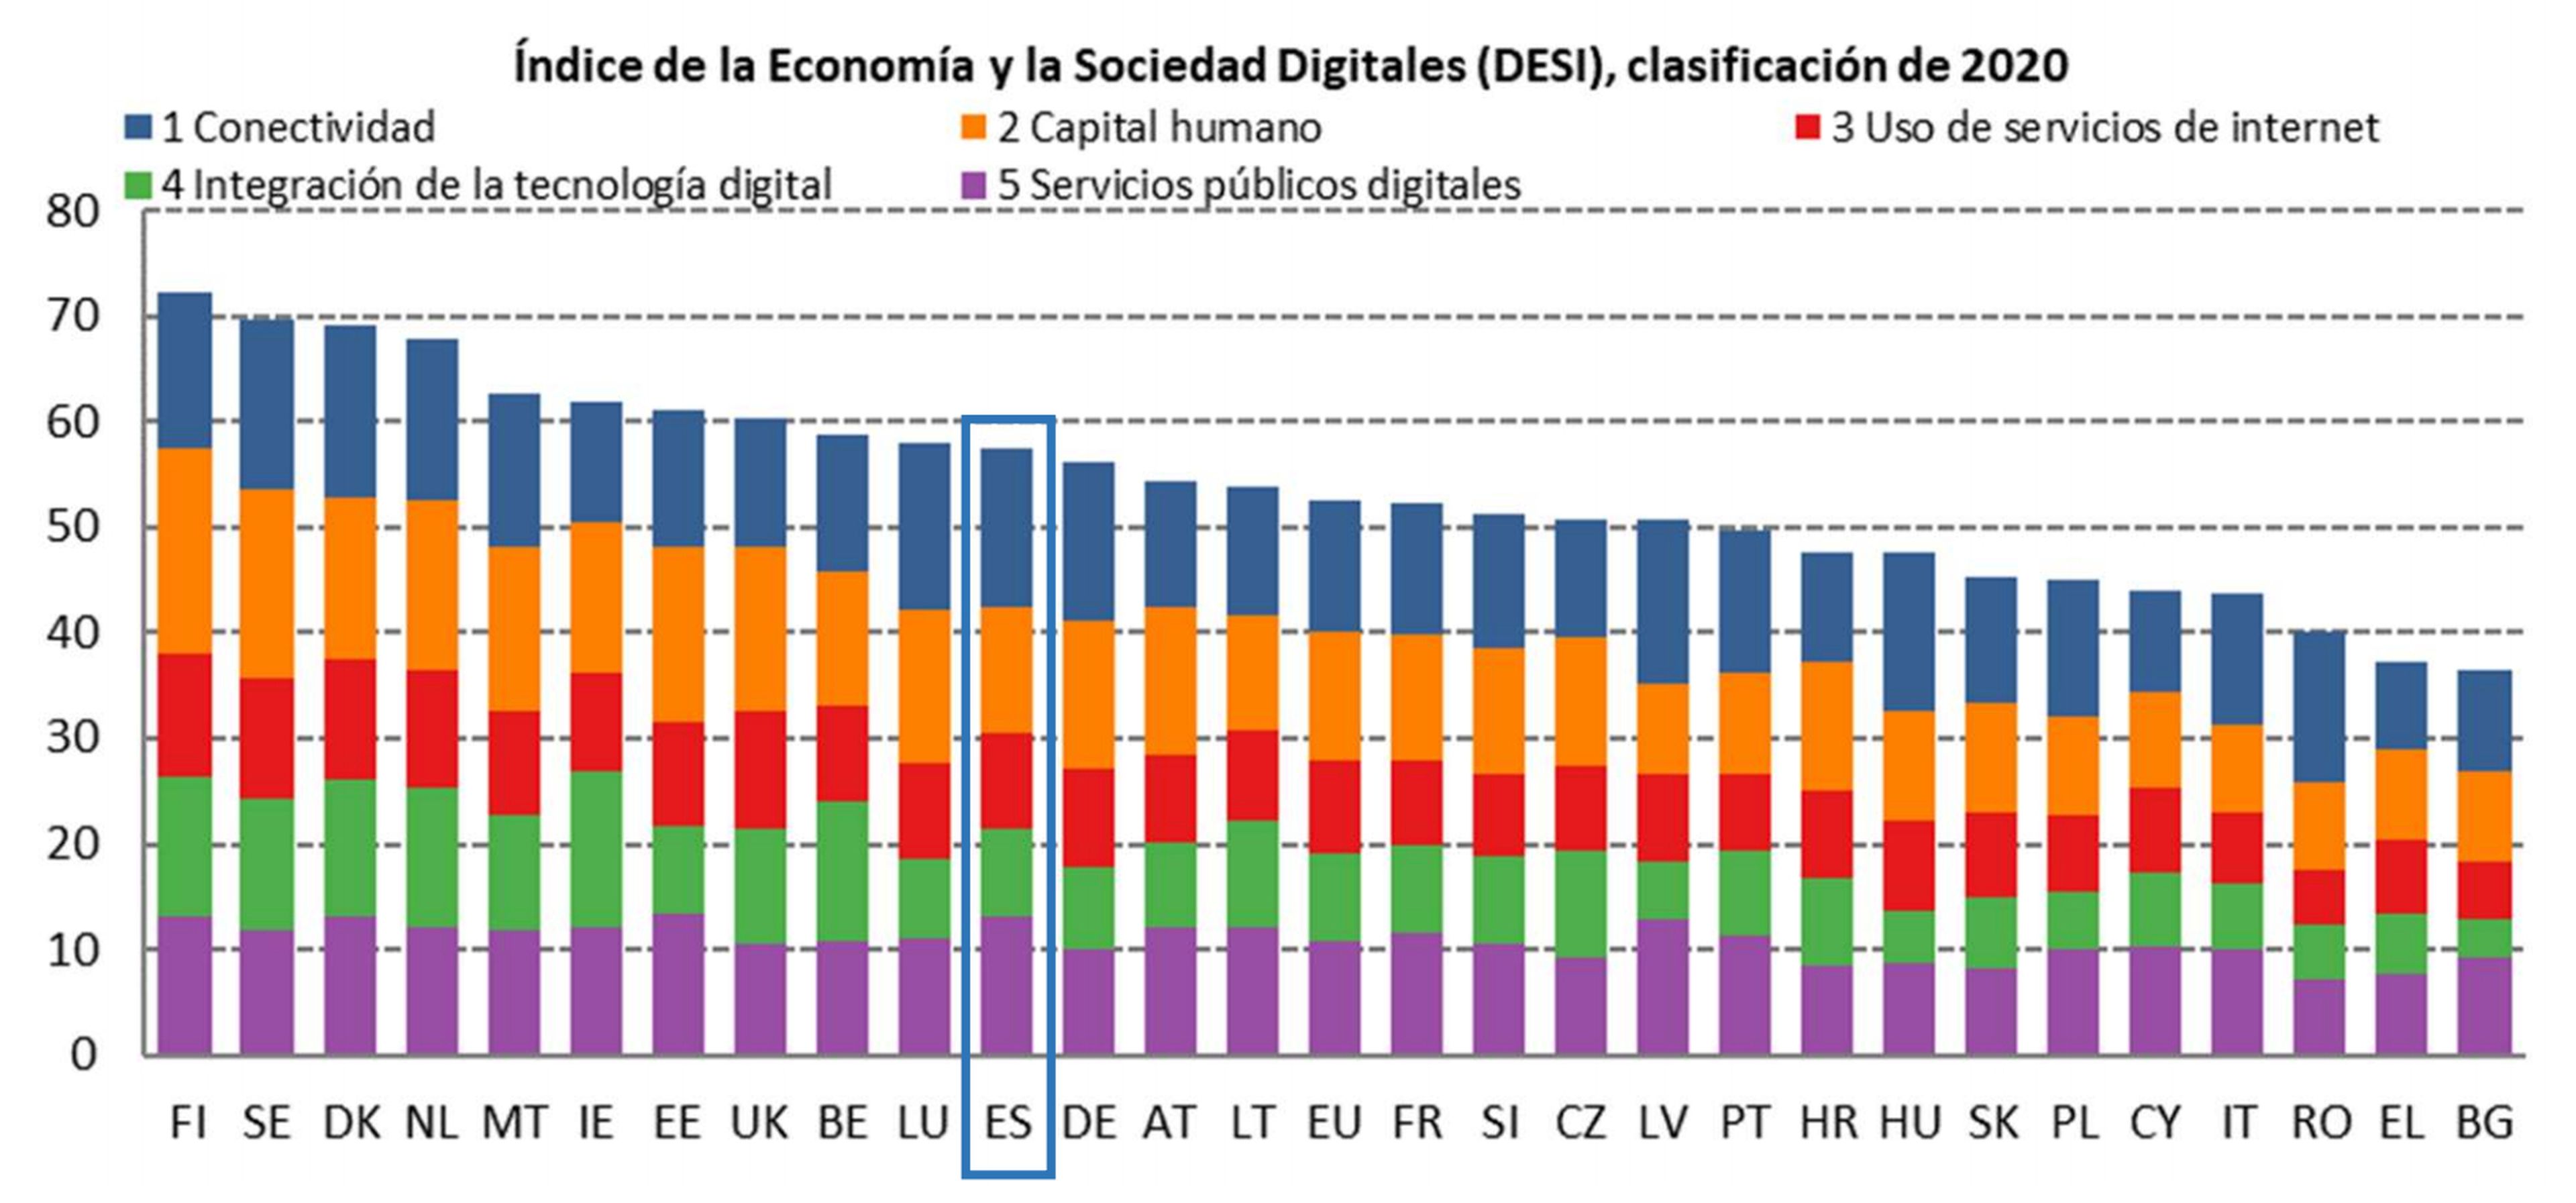 Clasificación de competitividad digital en la UE, según el índice DESI